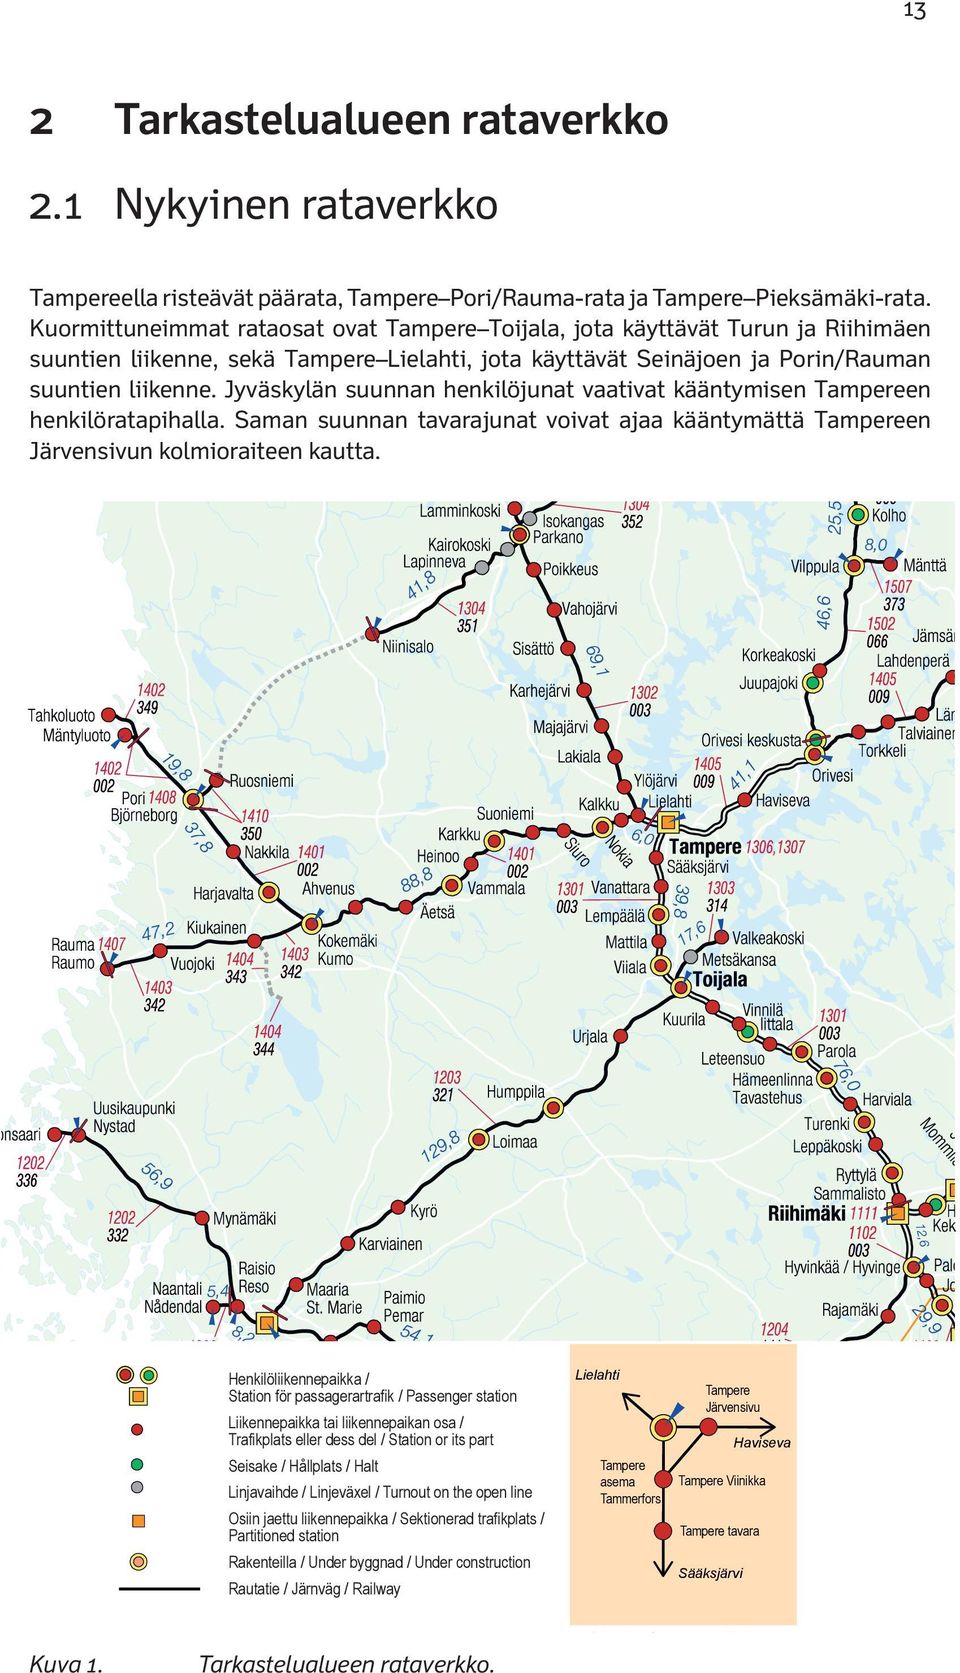 1 Nykyinen rataverkko Hanko Turku Avståndstabell Kerava Distance table Maaria S.